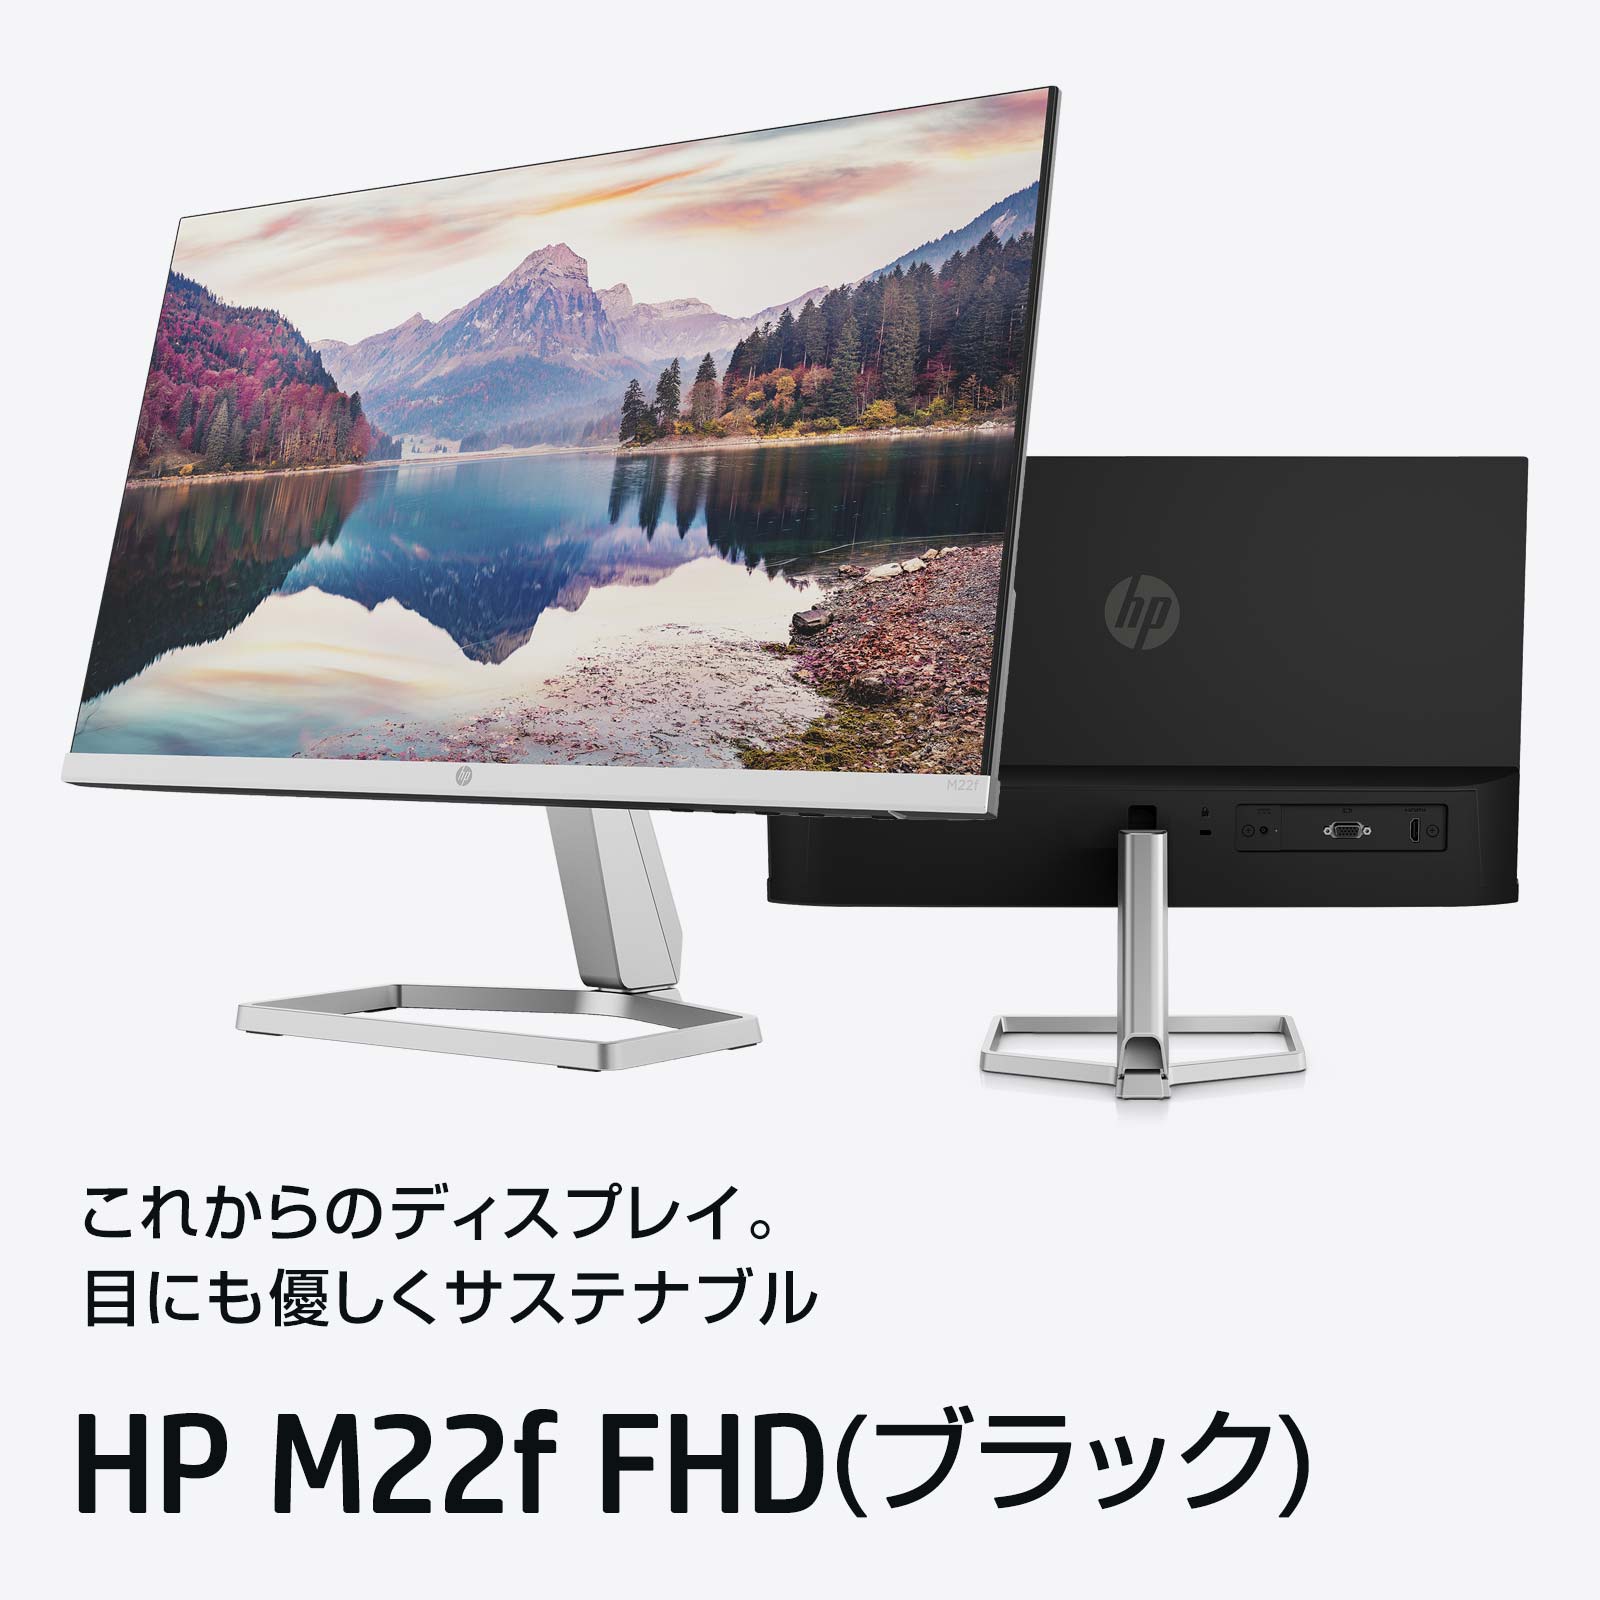 HP M22f FHD / HP M22fw FHD